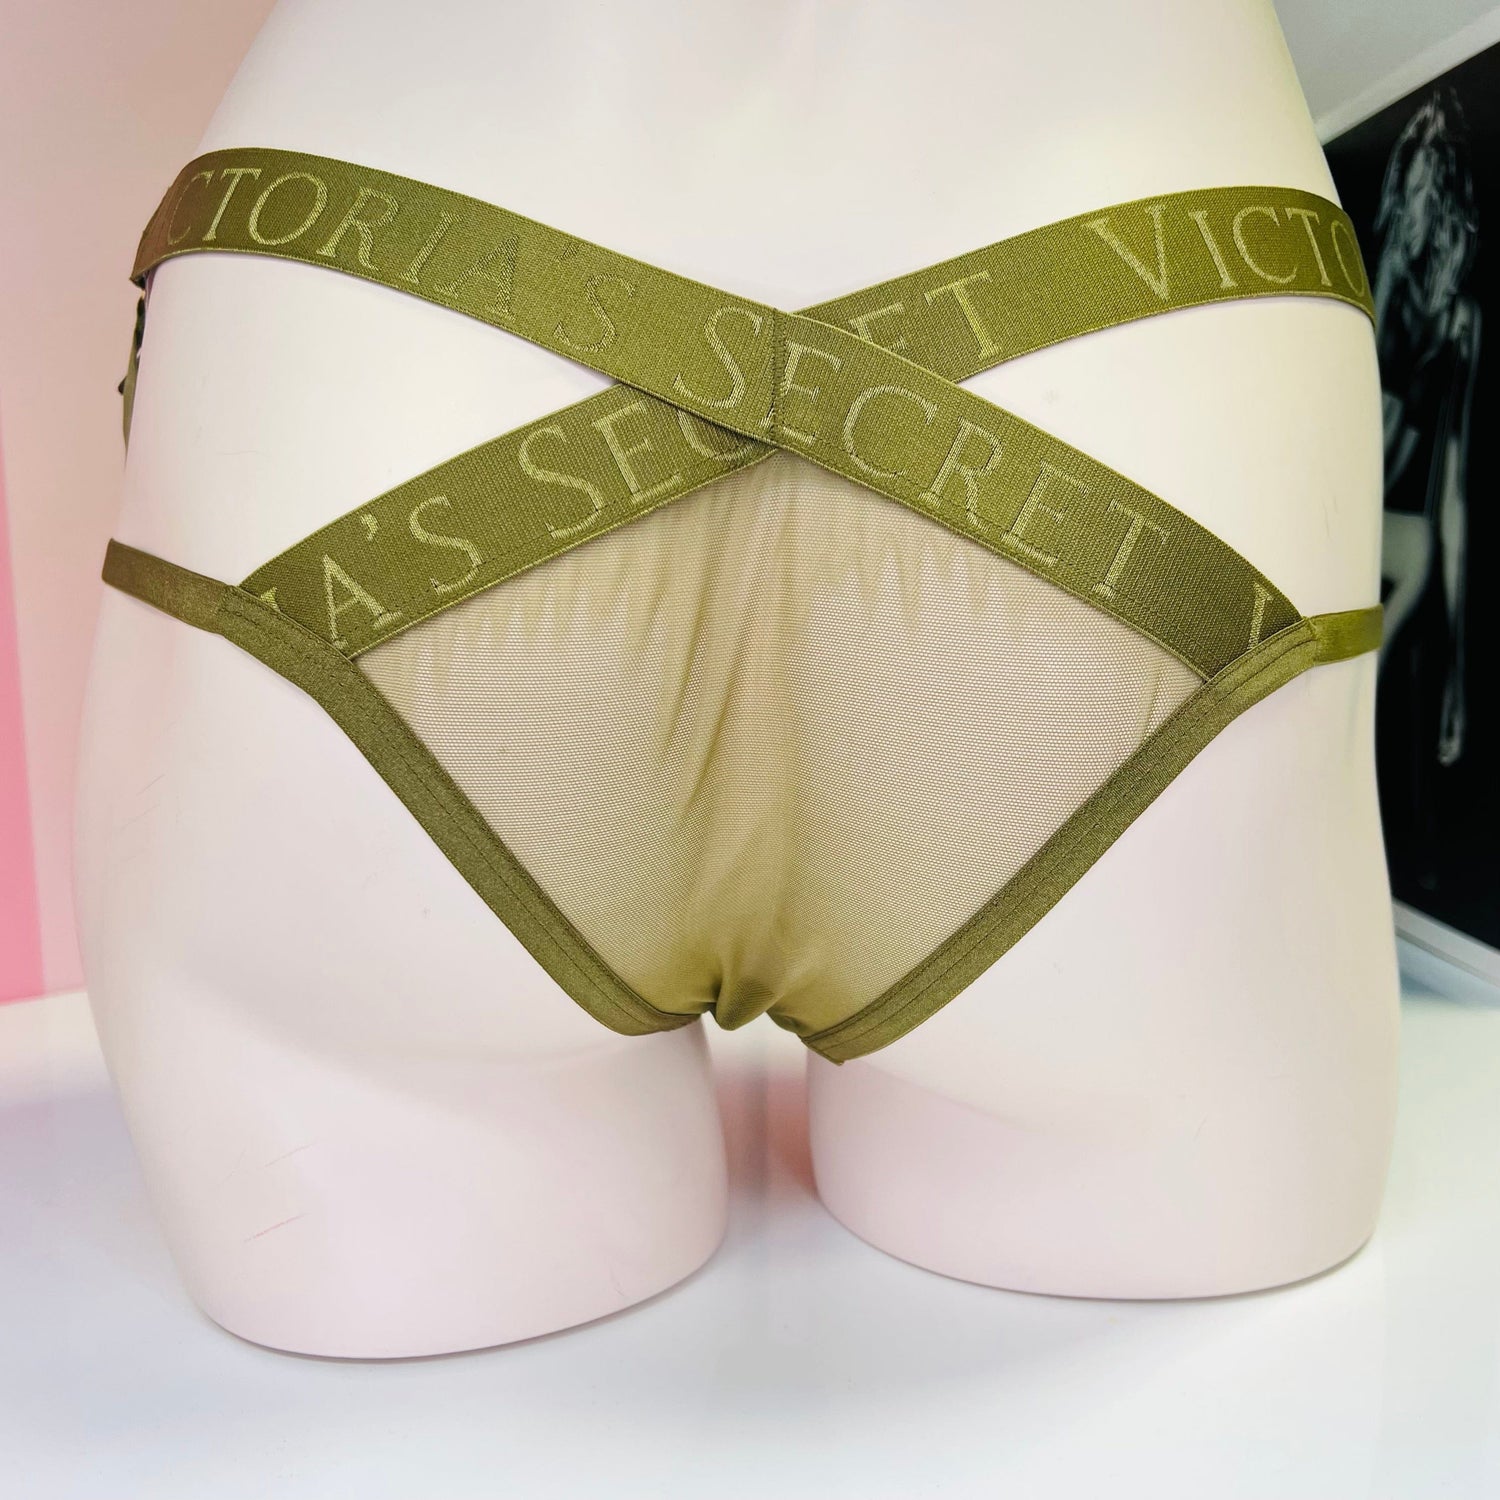 Kalhotky s pásky - Cheeky Victoria’s Secret